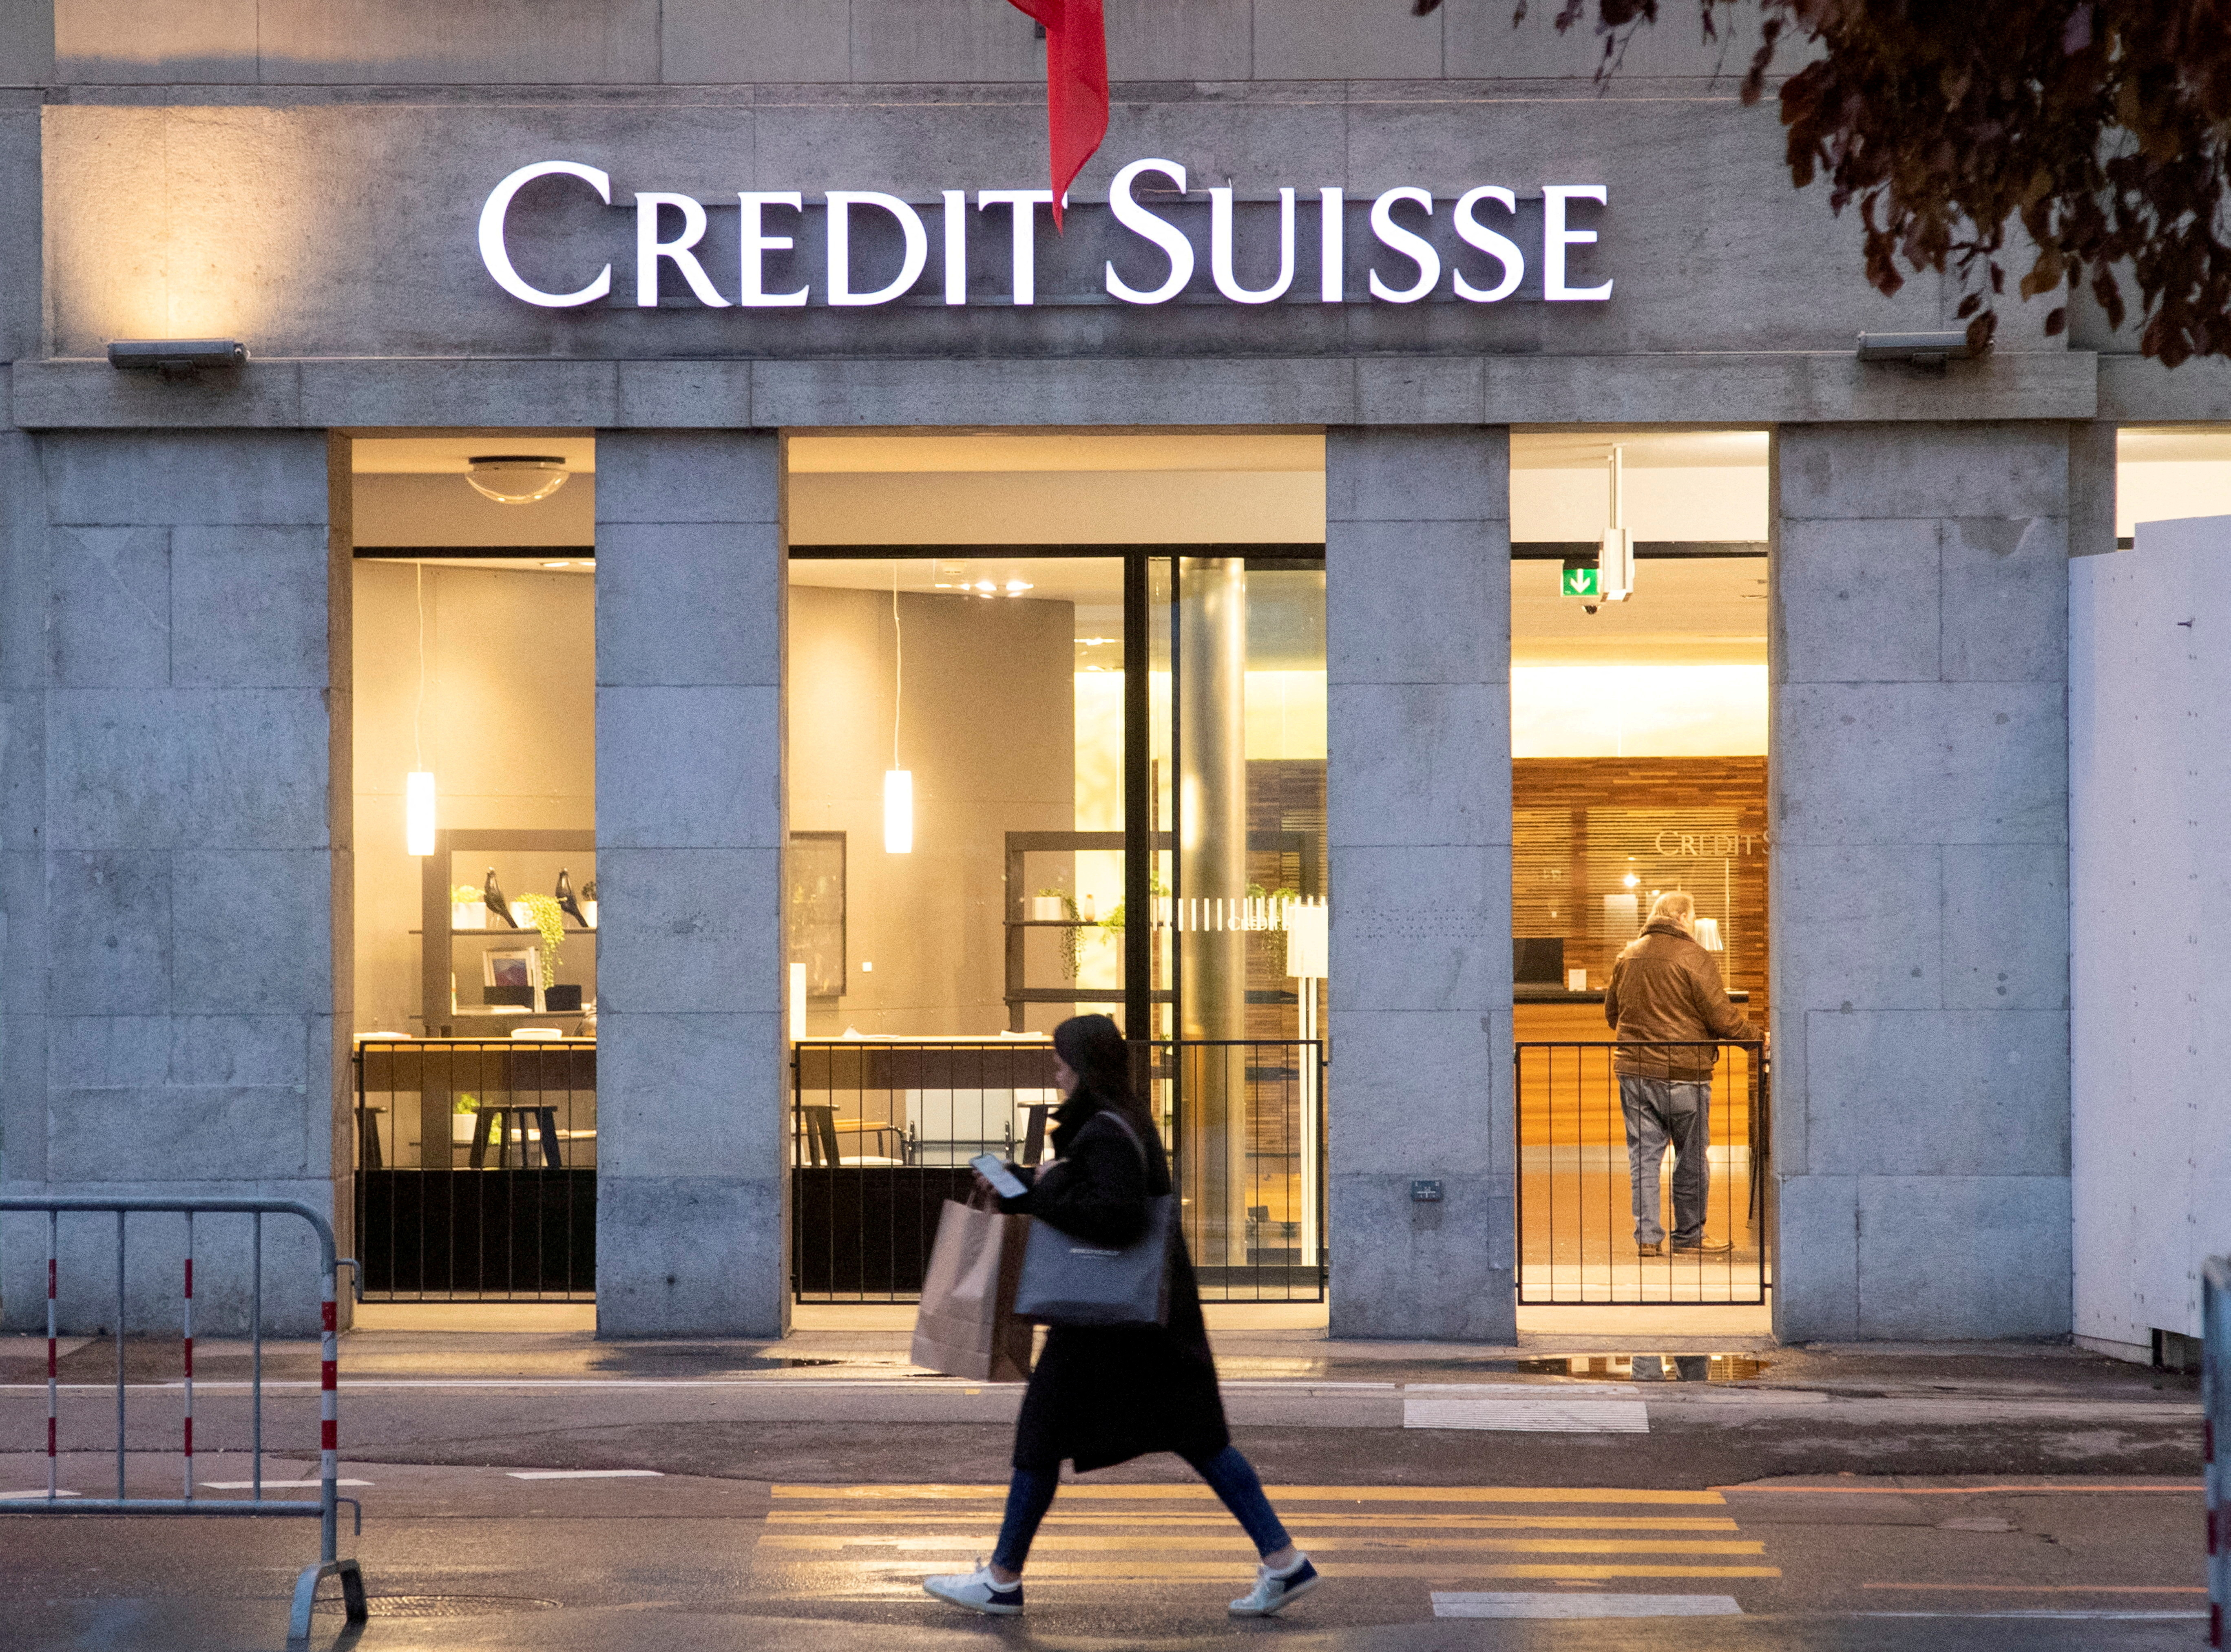 Renunció el presidente del Banco Nacional Saudí tras los comentarios que precipitaron la crisis del Credit Suisse. (REUTERS/Arnd Wiegmann)